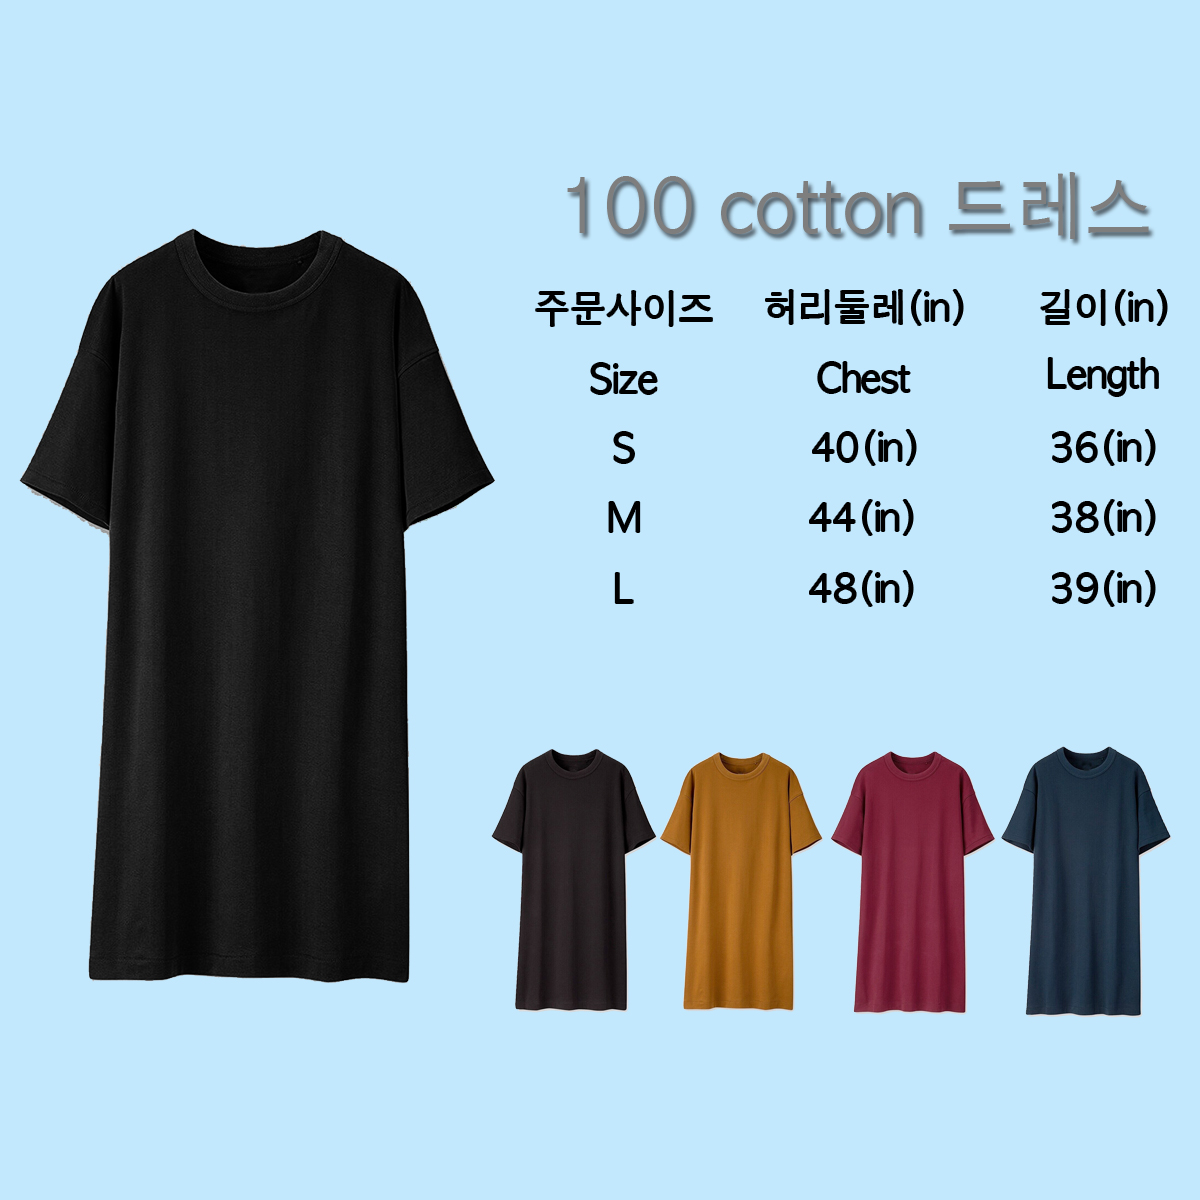 พร้อมส่ง ชุดDress สไตล์เกาหลี ใสๆทรงน่ารัก Cotton100% เกรดพรีเมี่ยมเกาหลี ราคาถูกๆ มีเก็บเงินปลายทาง